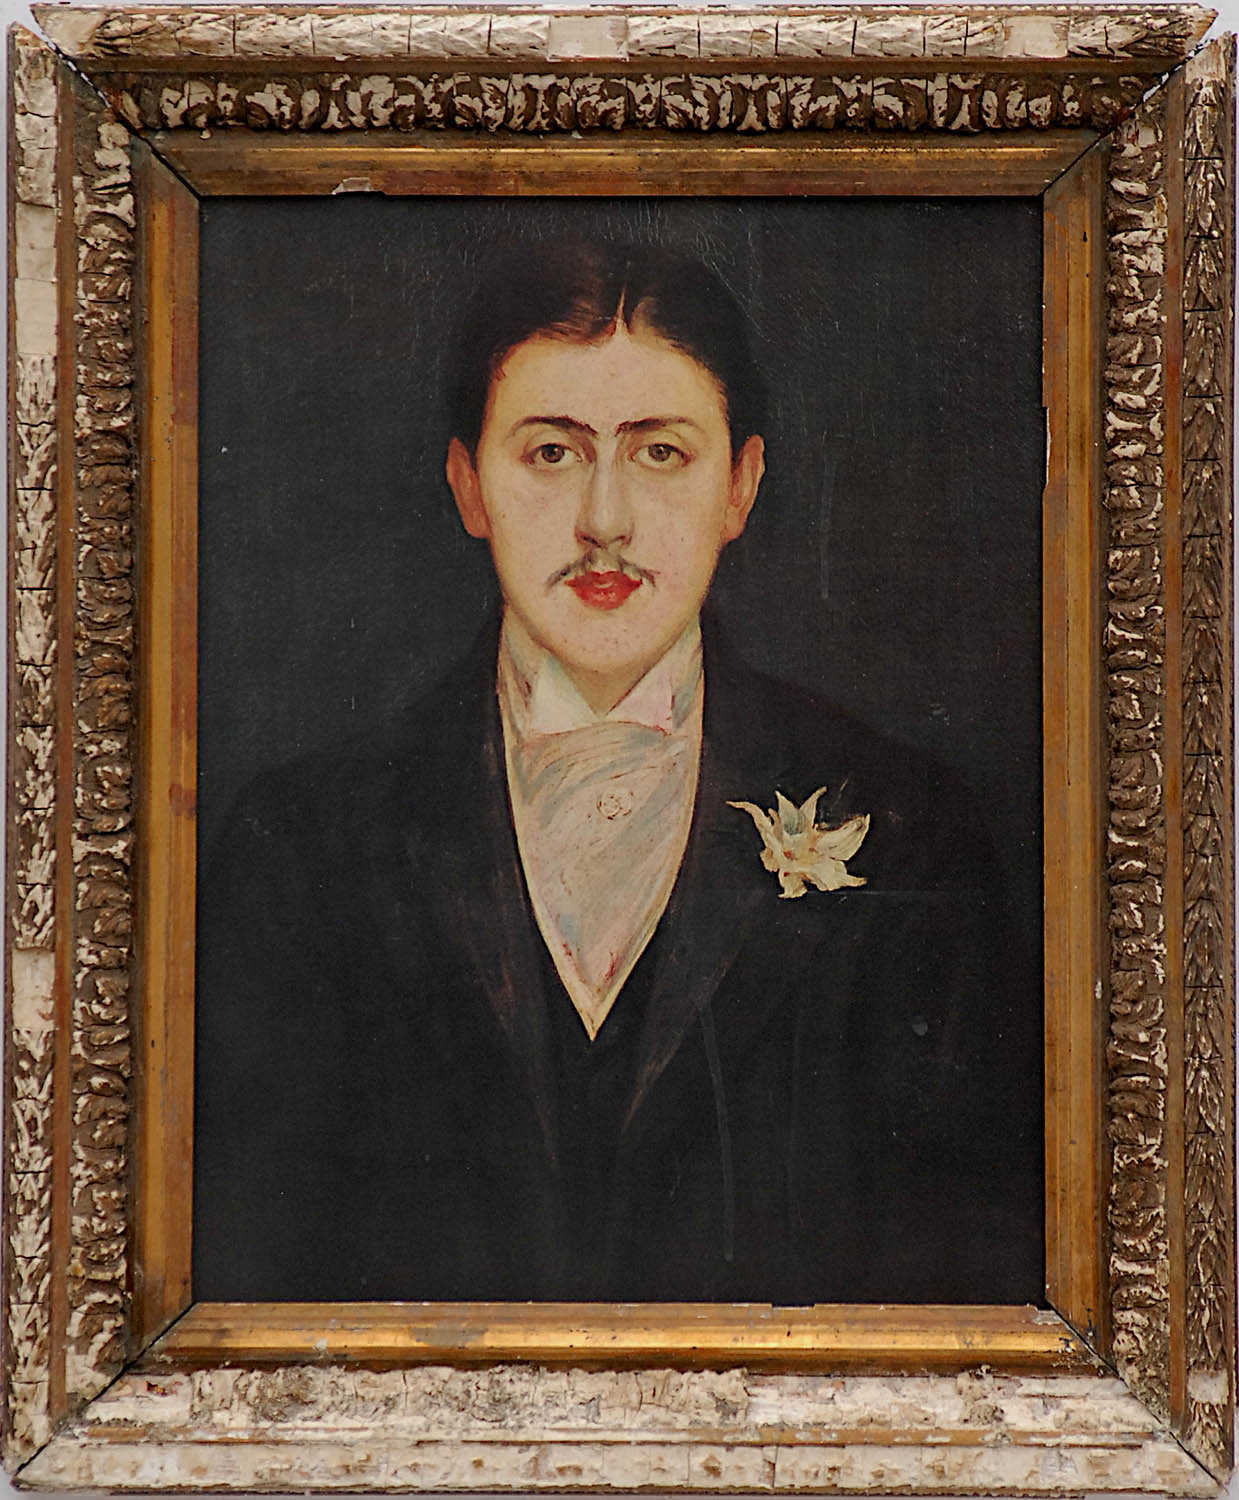 PORTRAIT OF MARCEL PROUST, quadrichrome, 42cm x 32cm, framed and glazed.